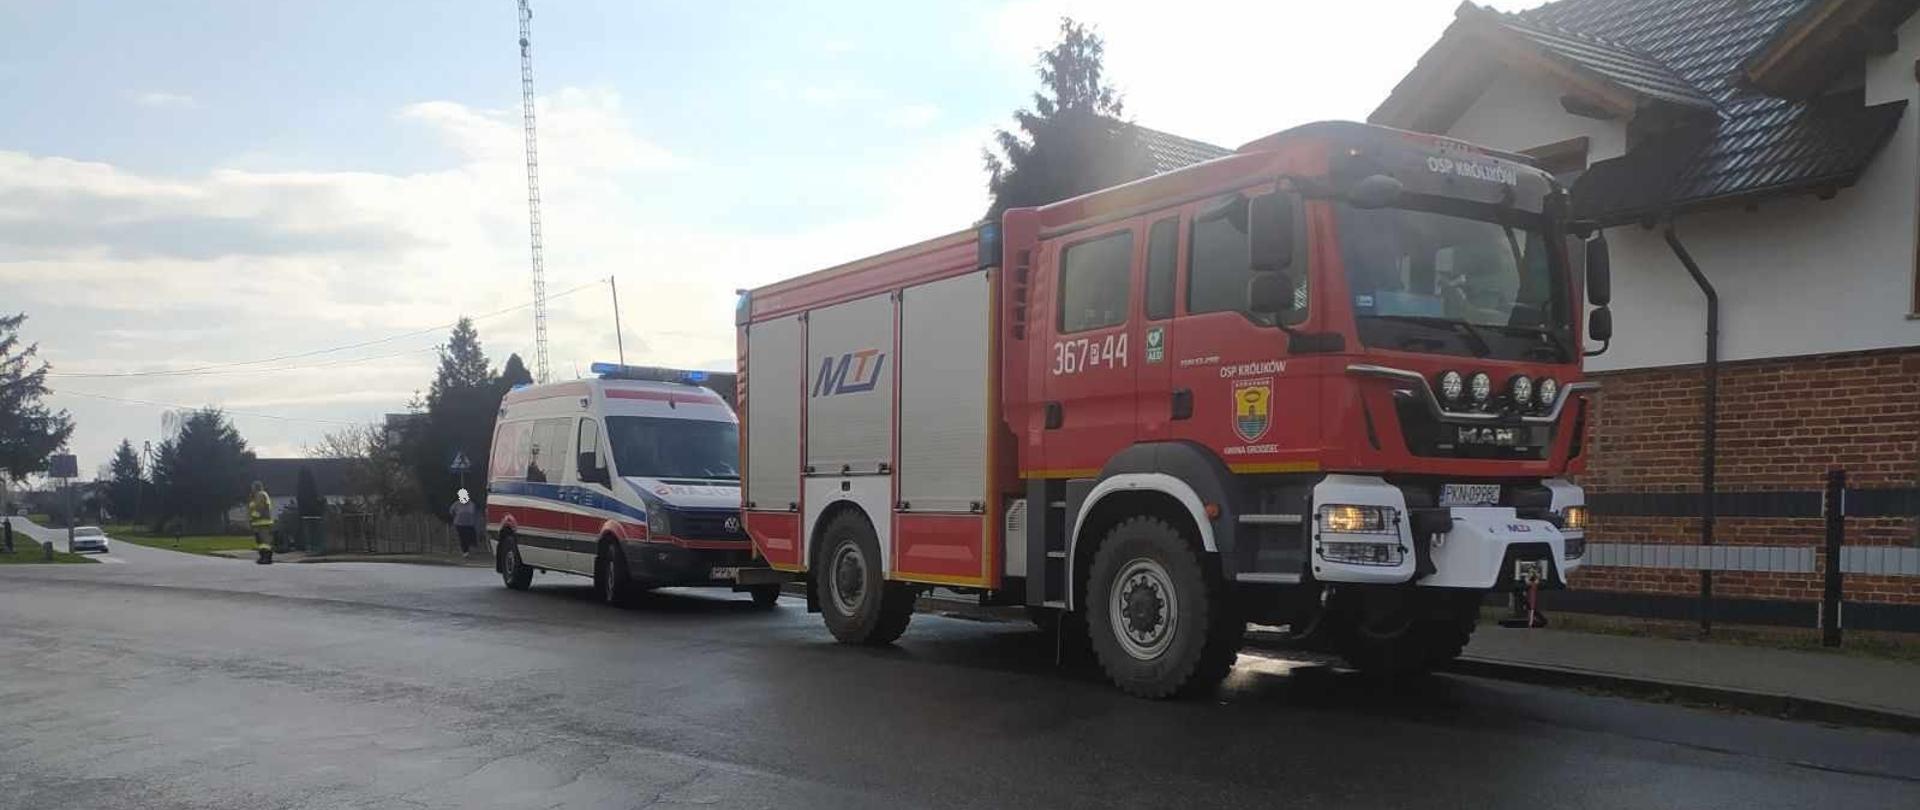 Zdjęcie przedstawia samochód strażacki oraz karetkę pogotowia ratunkowego, które stoją zaparkowane na jezdni przed budynkiem mieszkalnym jednorodzinnym